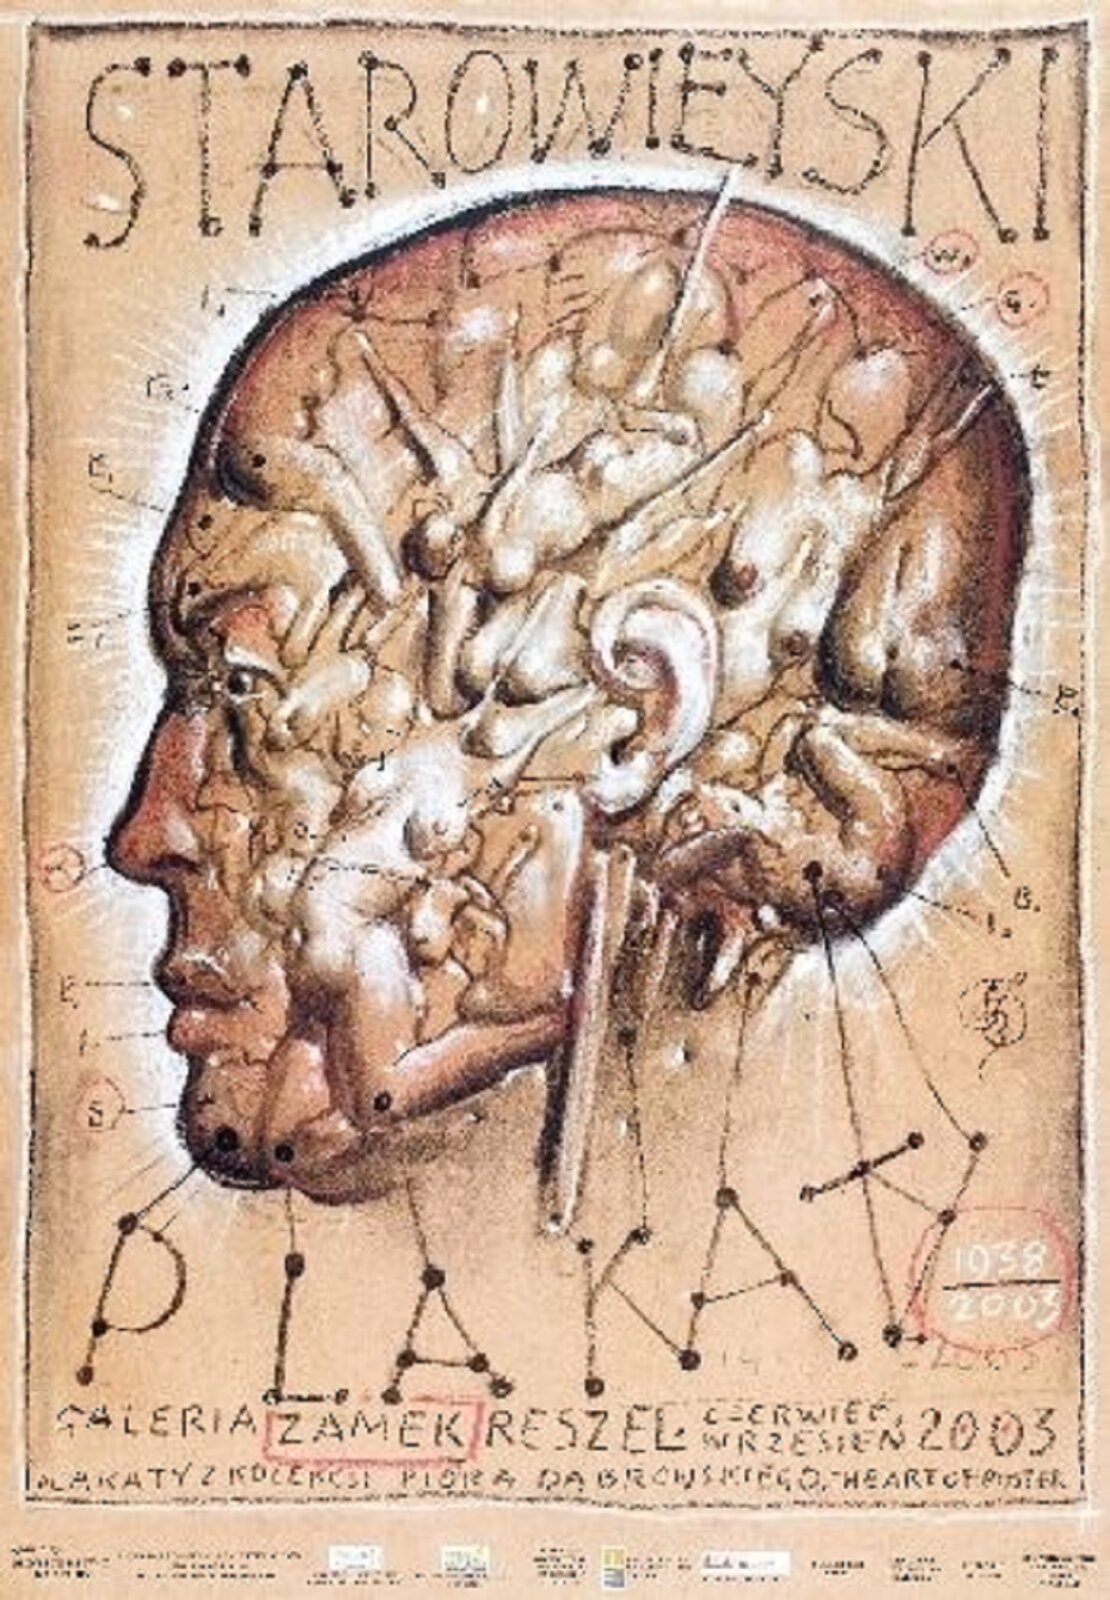 Ilustracja przedstawia plakat „Starowieyski - Galeria Refektarz Kartuzy”, autorstwa Franciszeka Starowieyskiego. Na jasno-beżowym tle znajduje się rysunek ludzkiej głowy z zaznaczonymi na niej punktami, od których biegną linie w kierunku małych literek. W kształt głowy wpisane zostały sylwetki nagich kobiecych torsów. Na górze grafiki umieszczono duży napis „STAROWIEJSKI”. Poniżej głowy znajduje się napis „PLAKATY” oraz opis wydarzenia wykonane brązową czcionką.